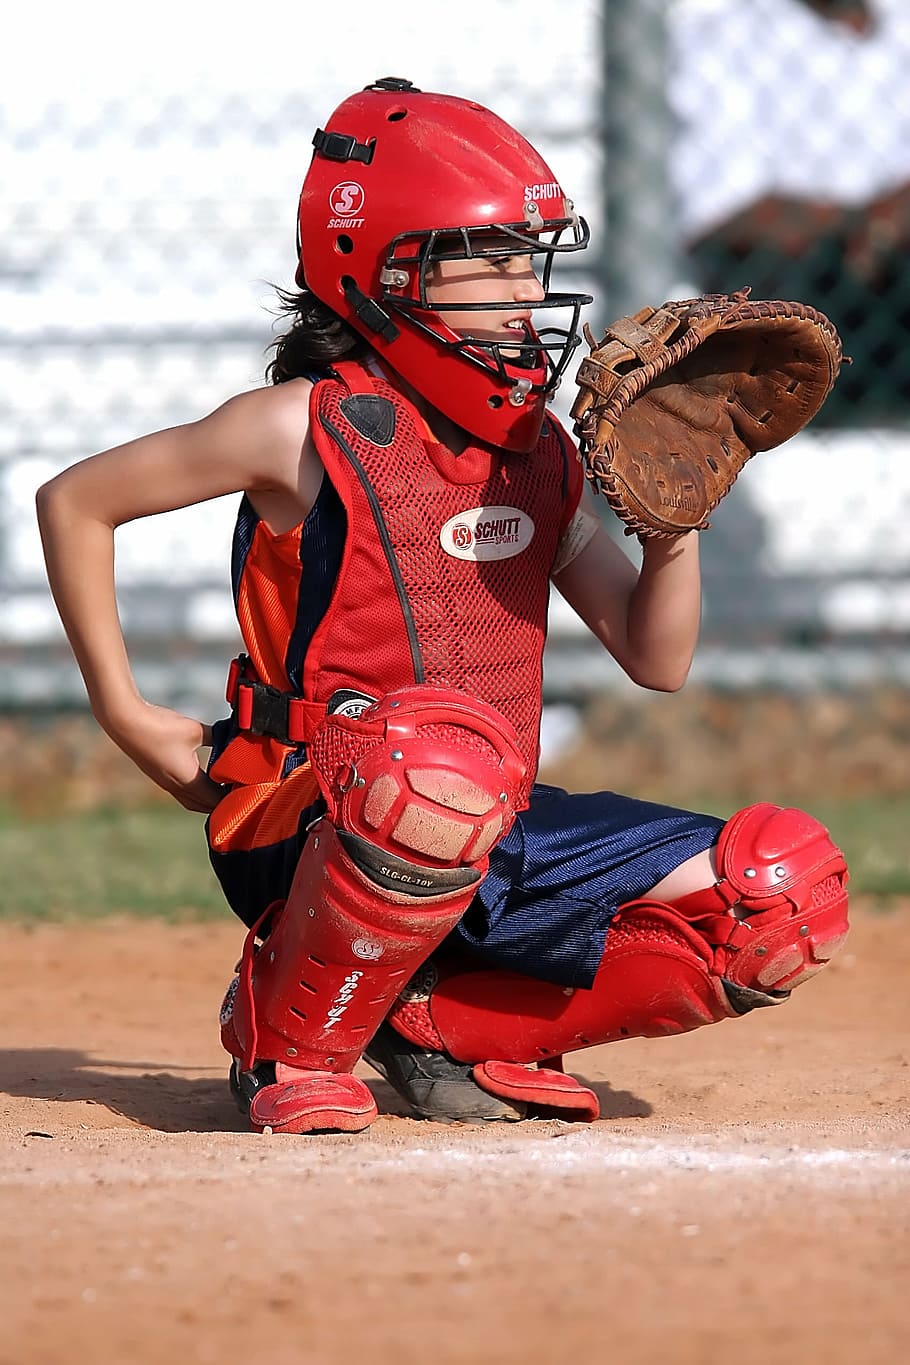 HD wallpaper: softball, player, girl, catcher, catcher's mitt, glove,  athlete | Wallpaper Flare